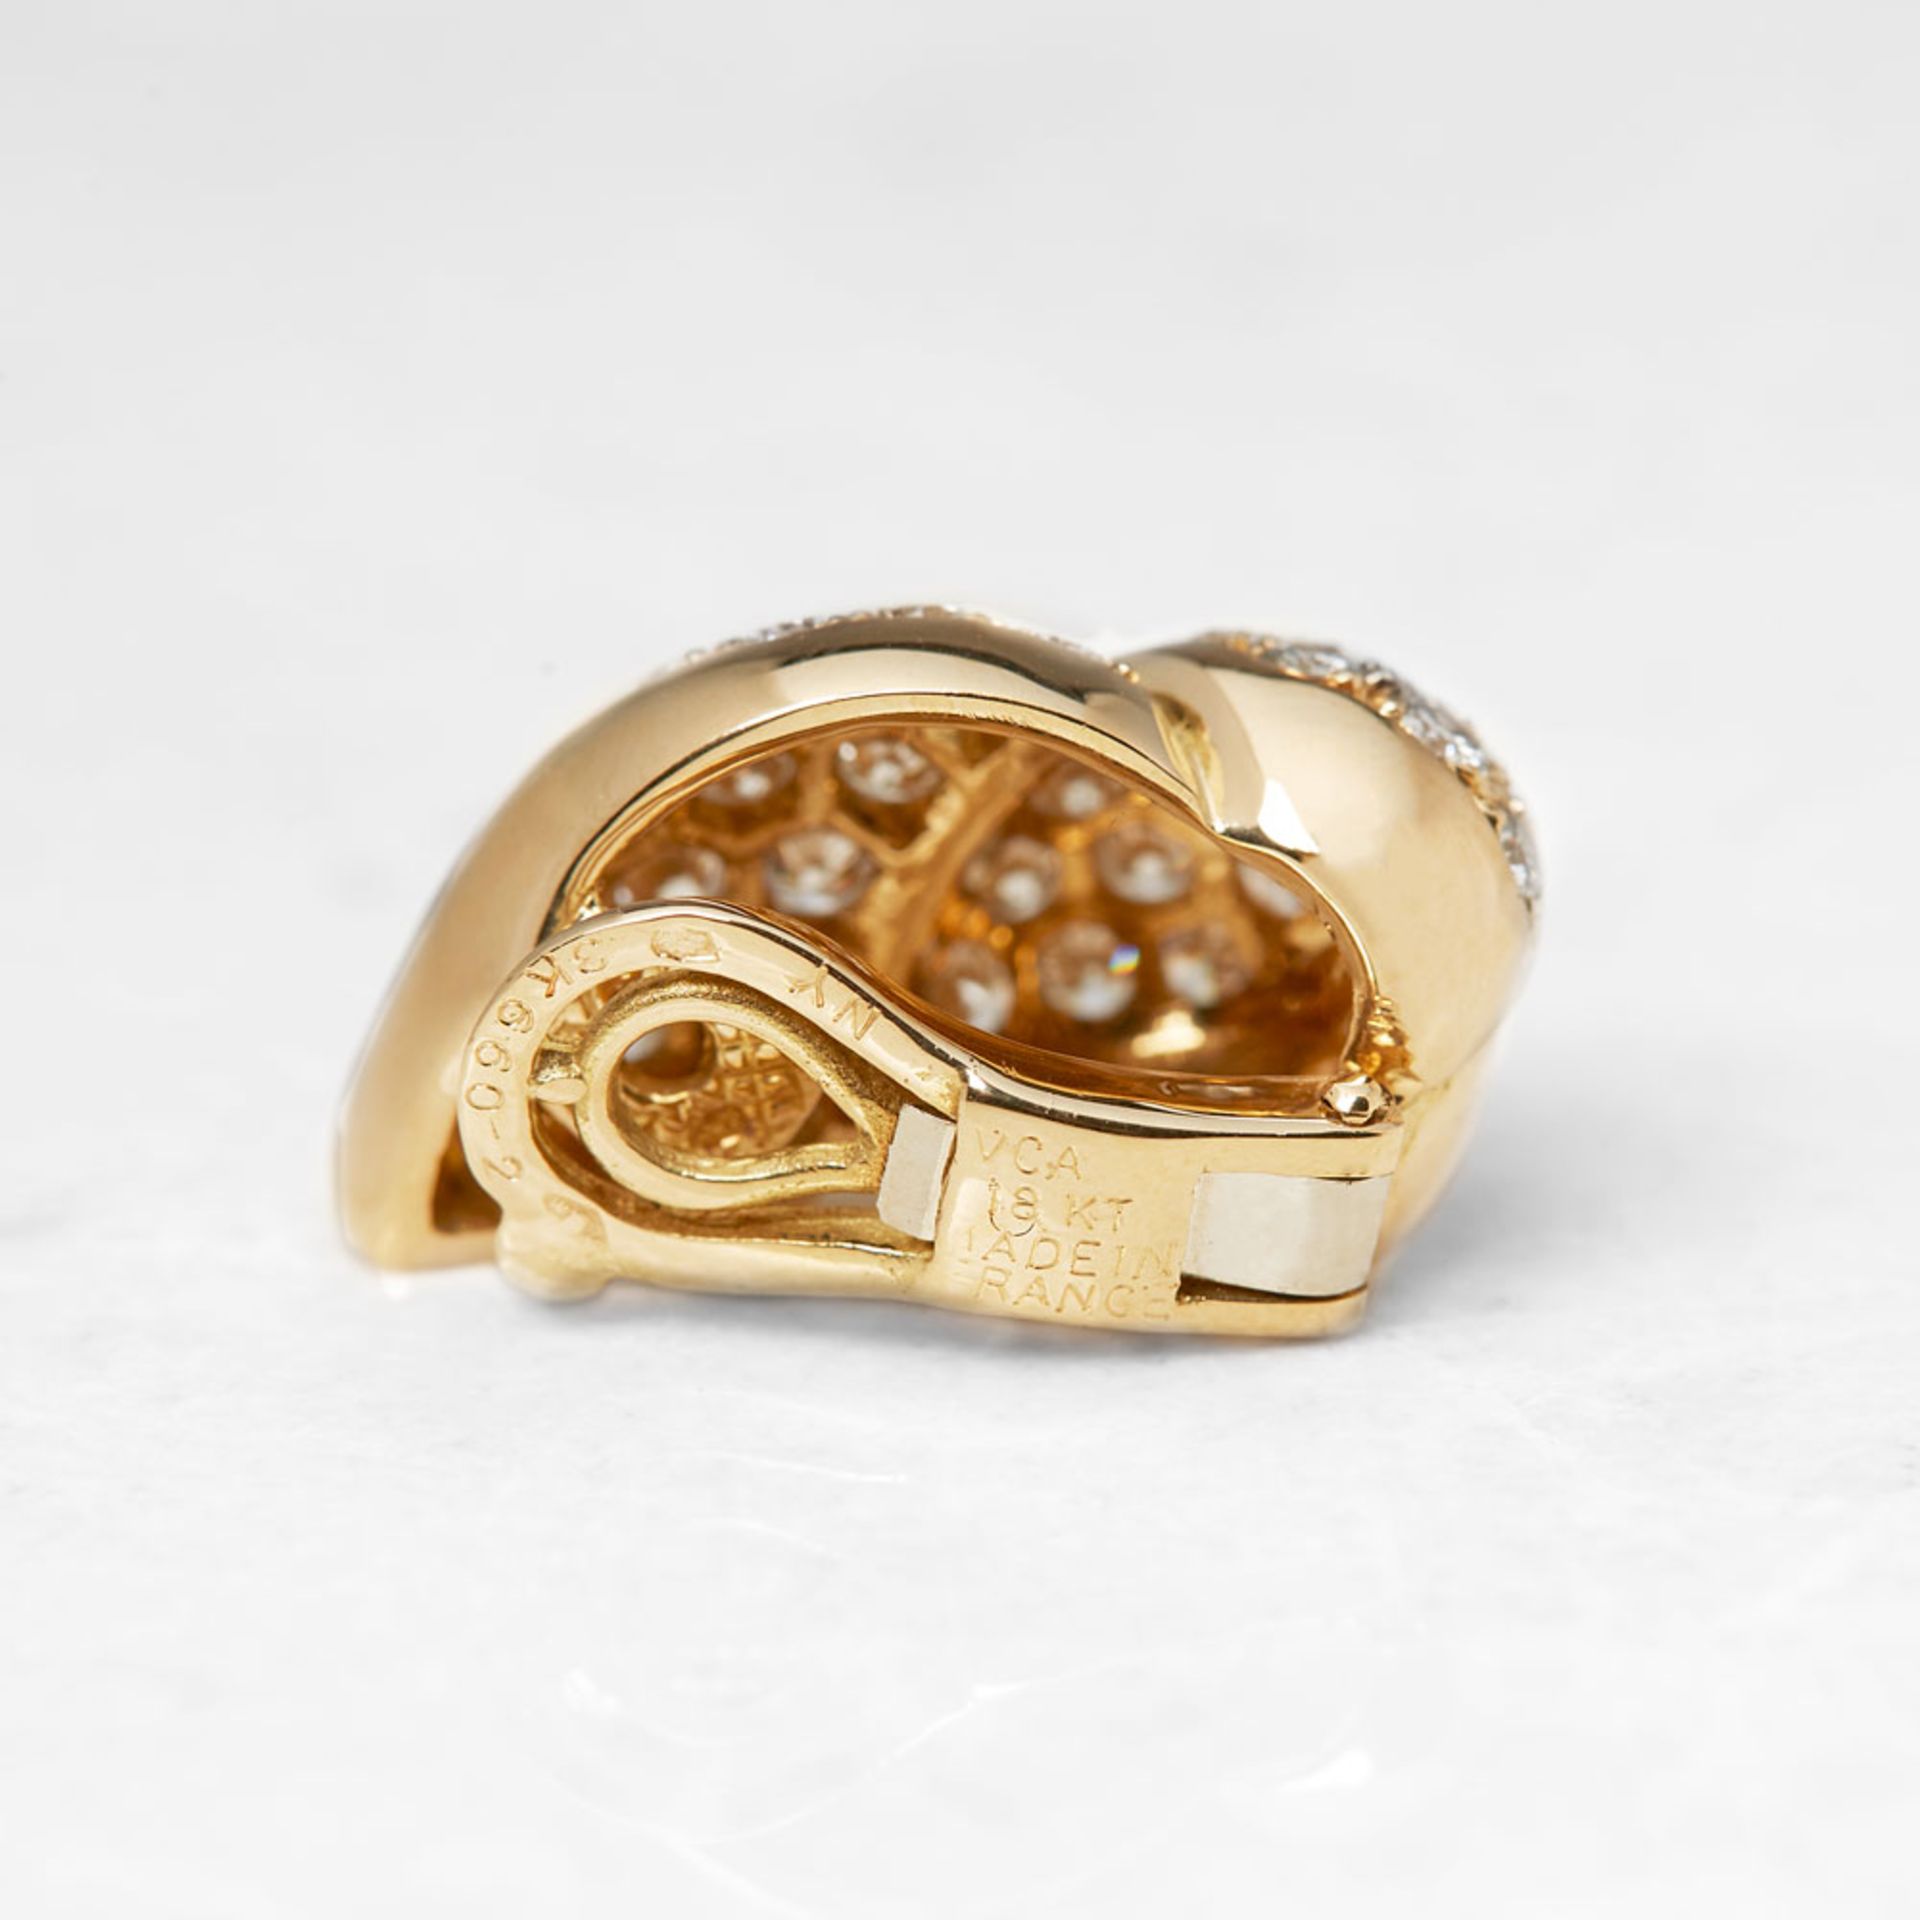 Van Cleef & Arpels 18k Yellow Gold Diamond Earrings - Image 4 of 7